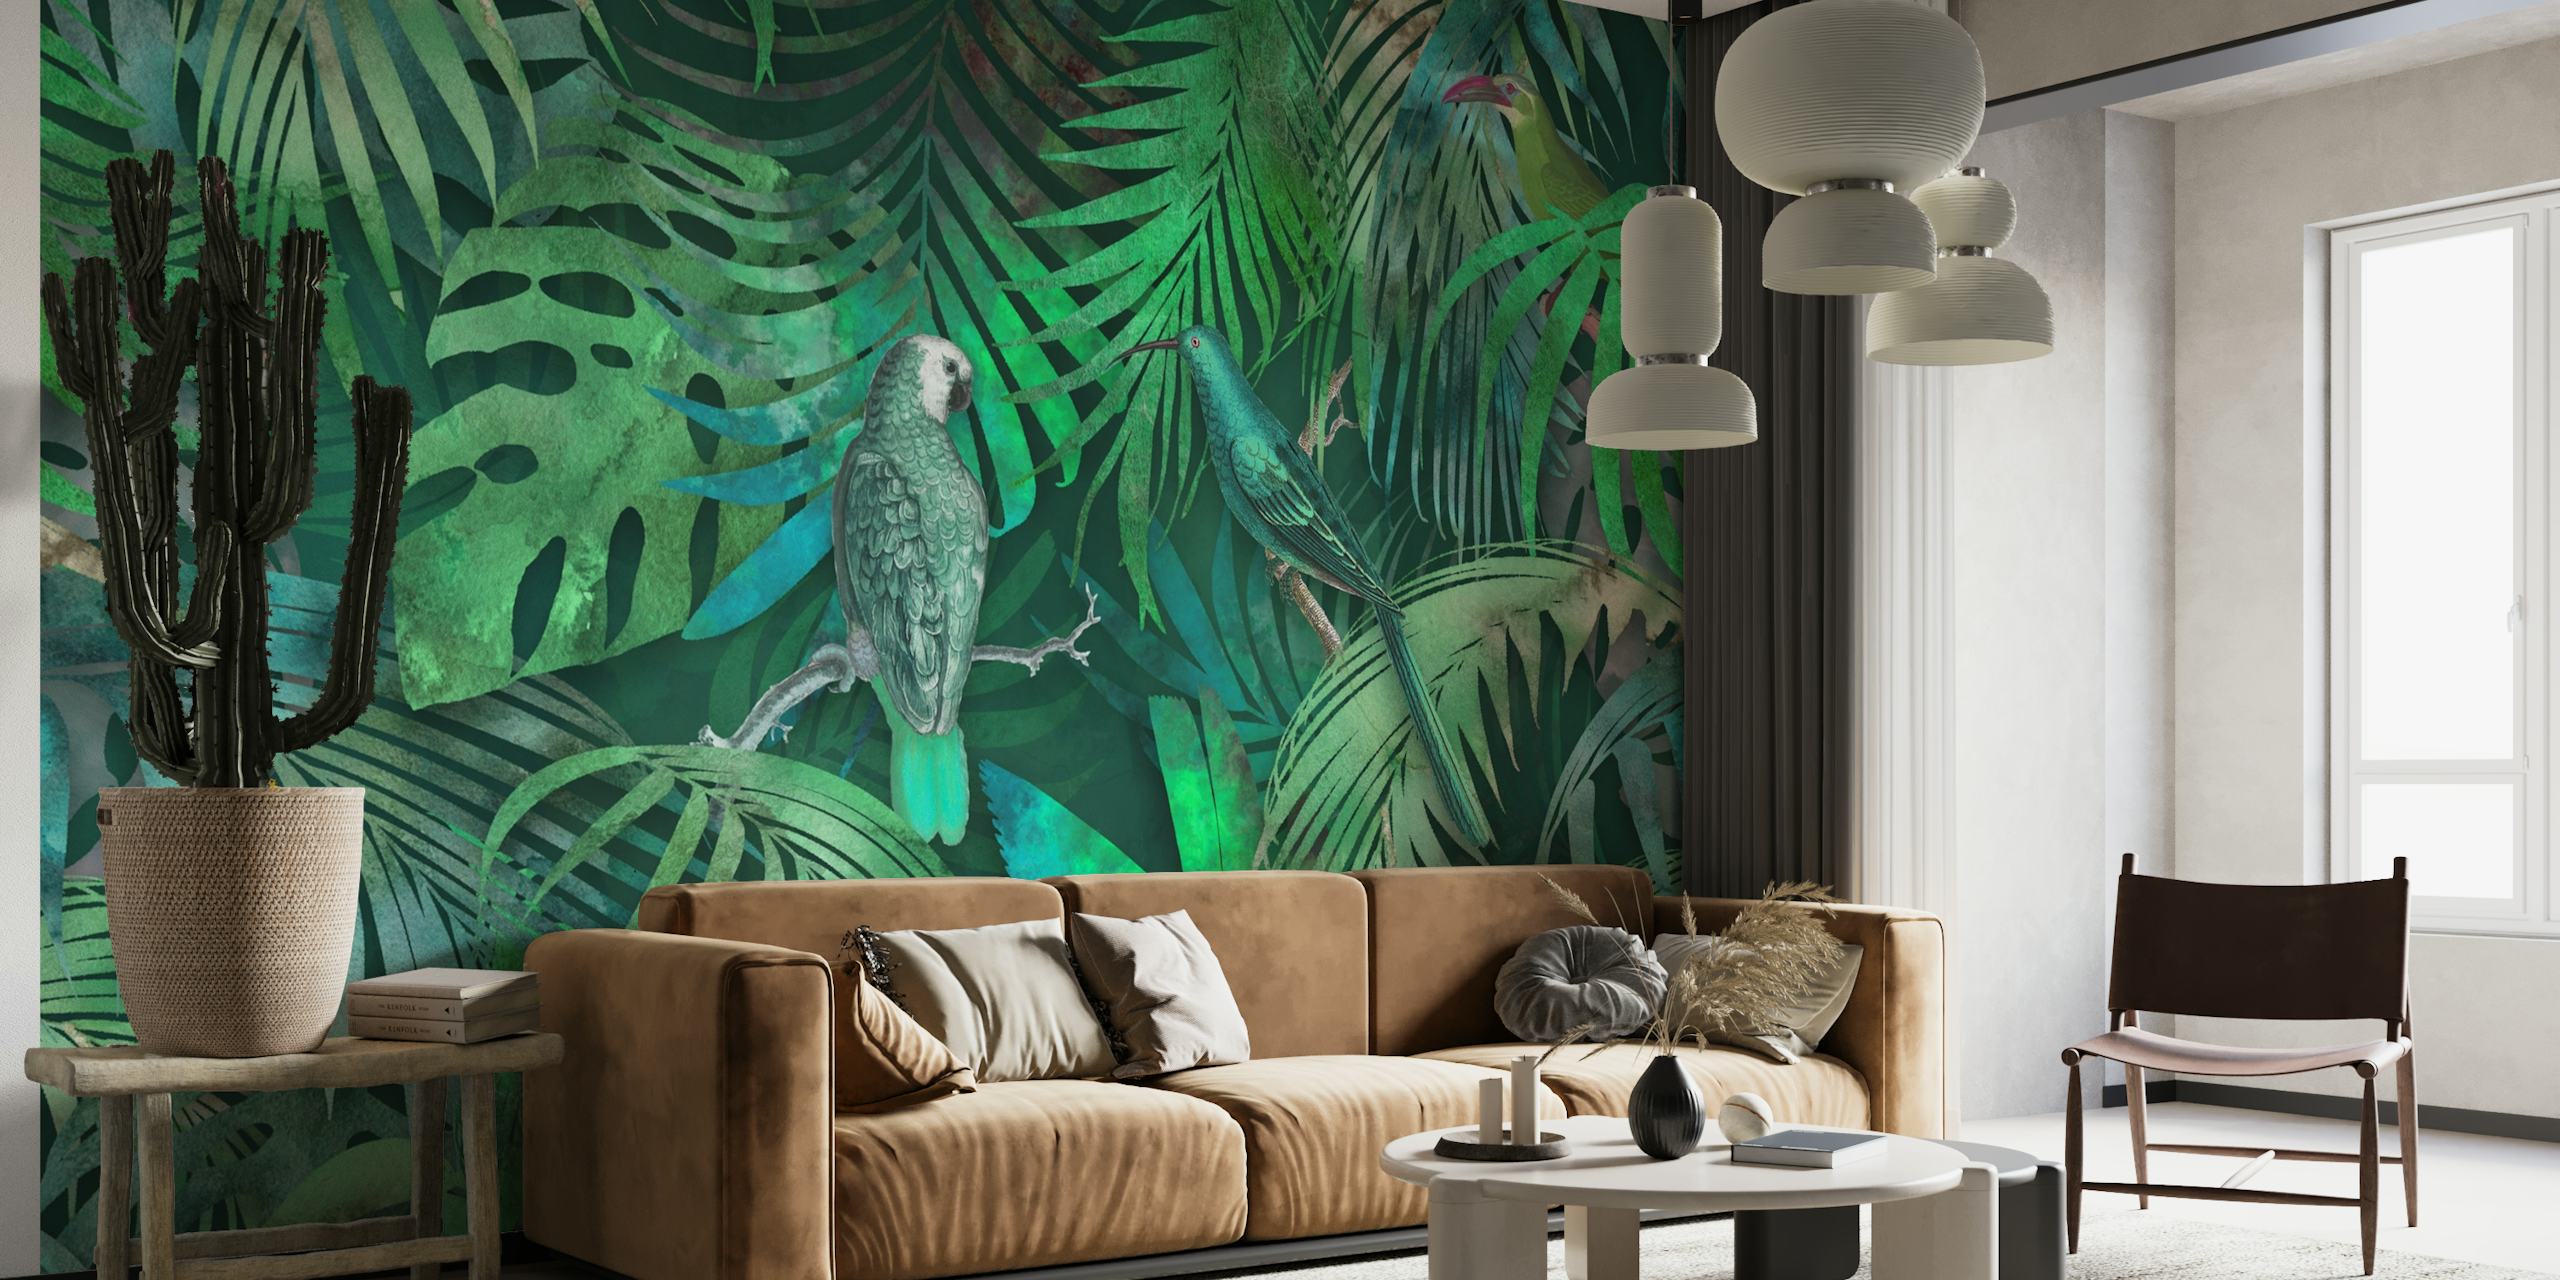 Un murale verdeggiante con pappagalli nascosti tra foglie tropicali